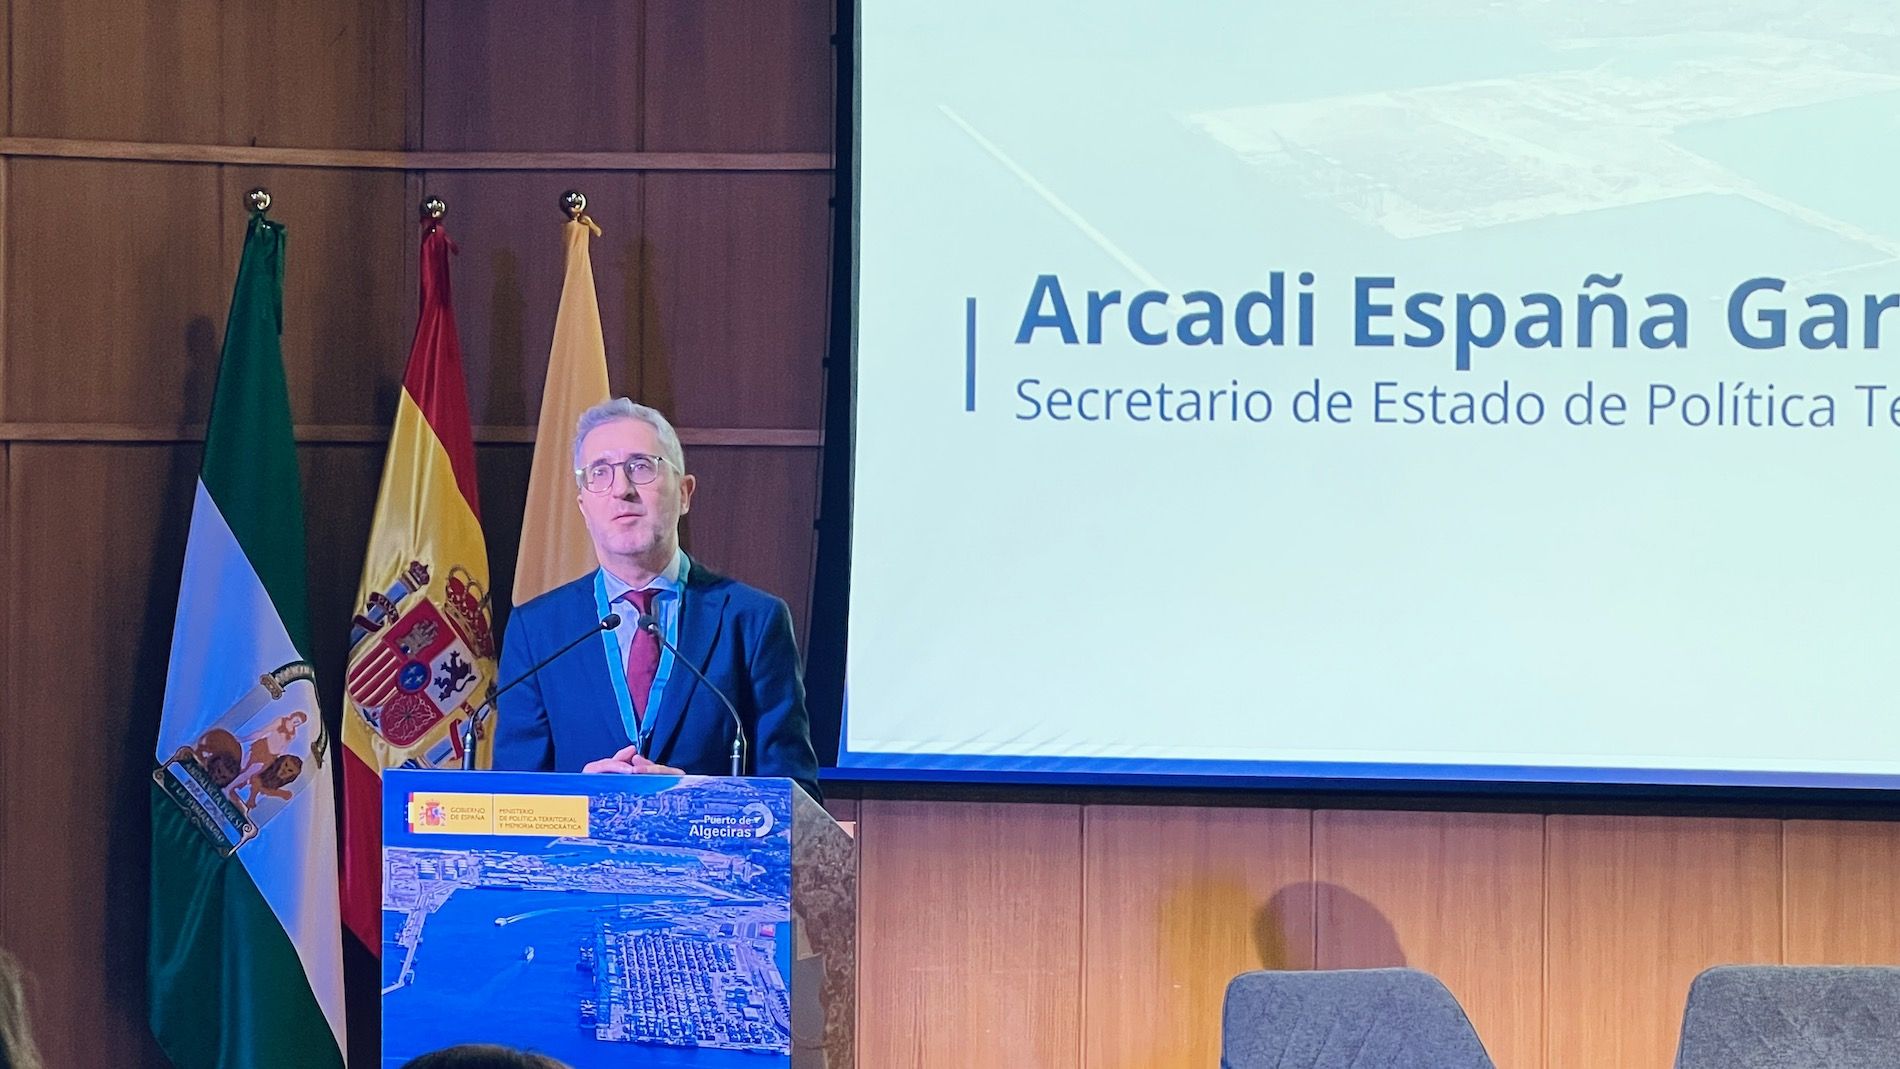 Arcadi España ha destacado el papel que juegan las Administraciones como prestador de servicios que debe estar en un constante proceso de mejora continua.